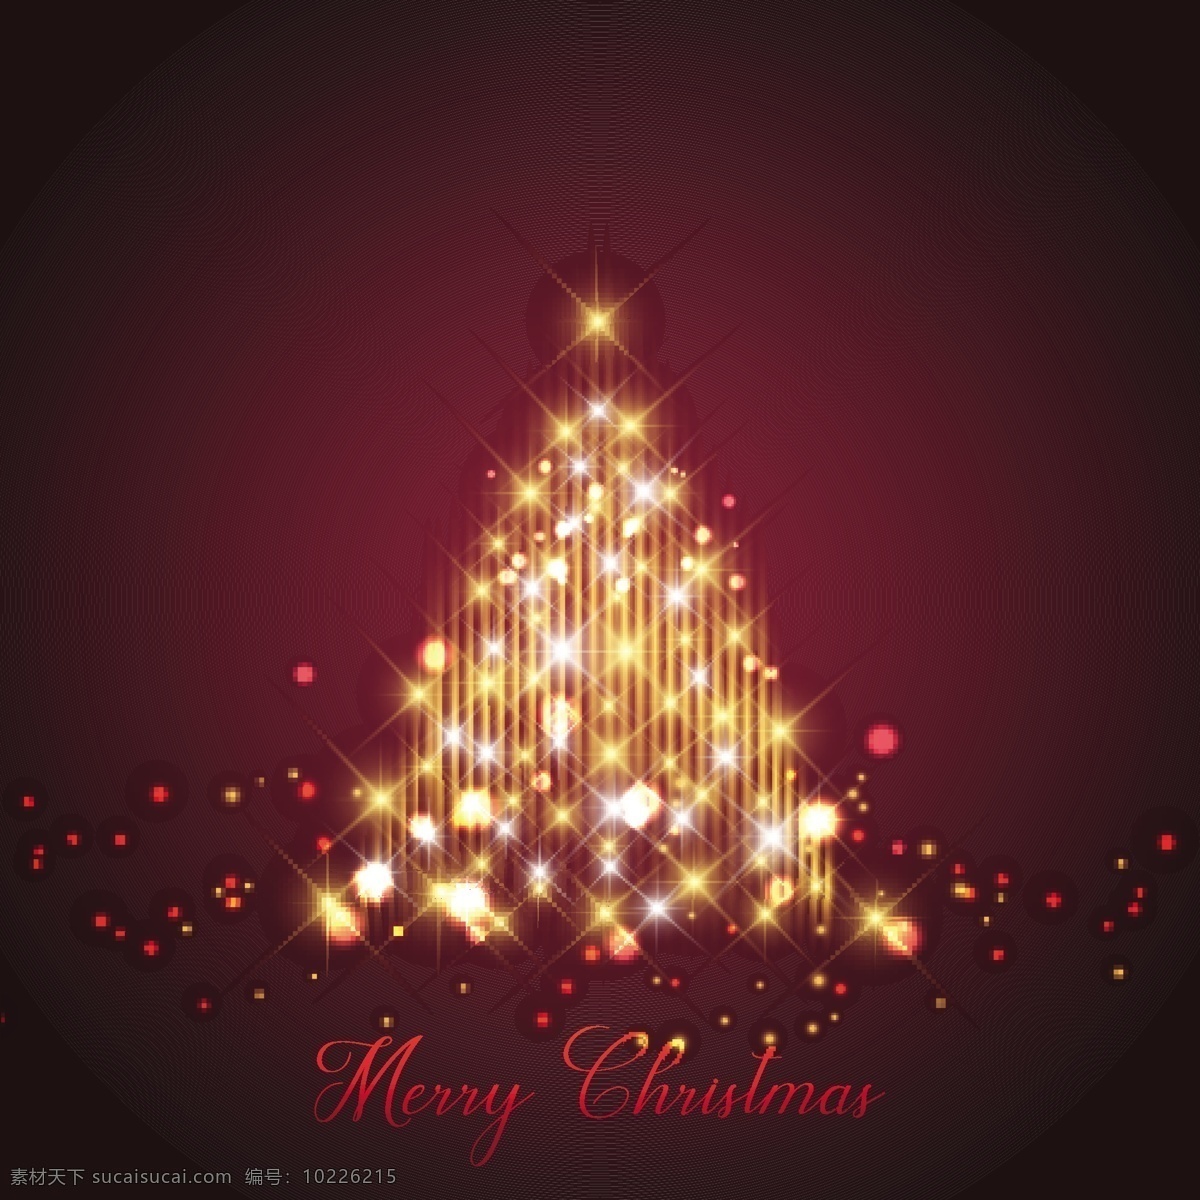 闪闪 发光 圣诞树 元素 金色 圣诞节 节日 卡通 光斑 过节 庆祝 狂欢 西方节日 假期 扁平 矢量